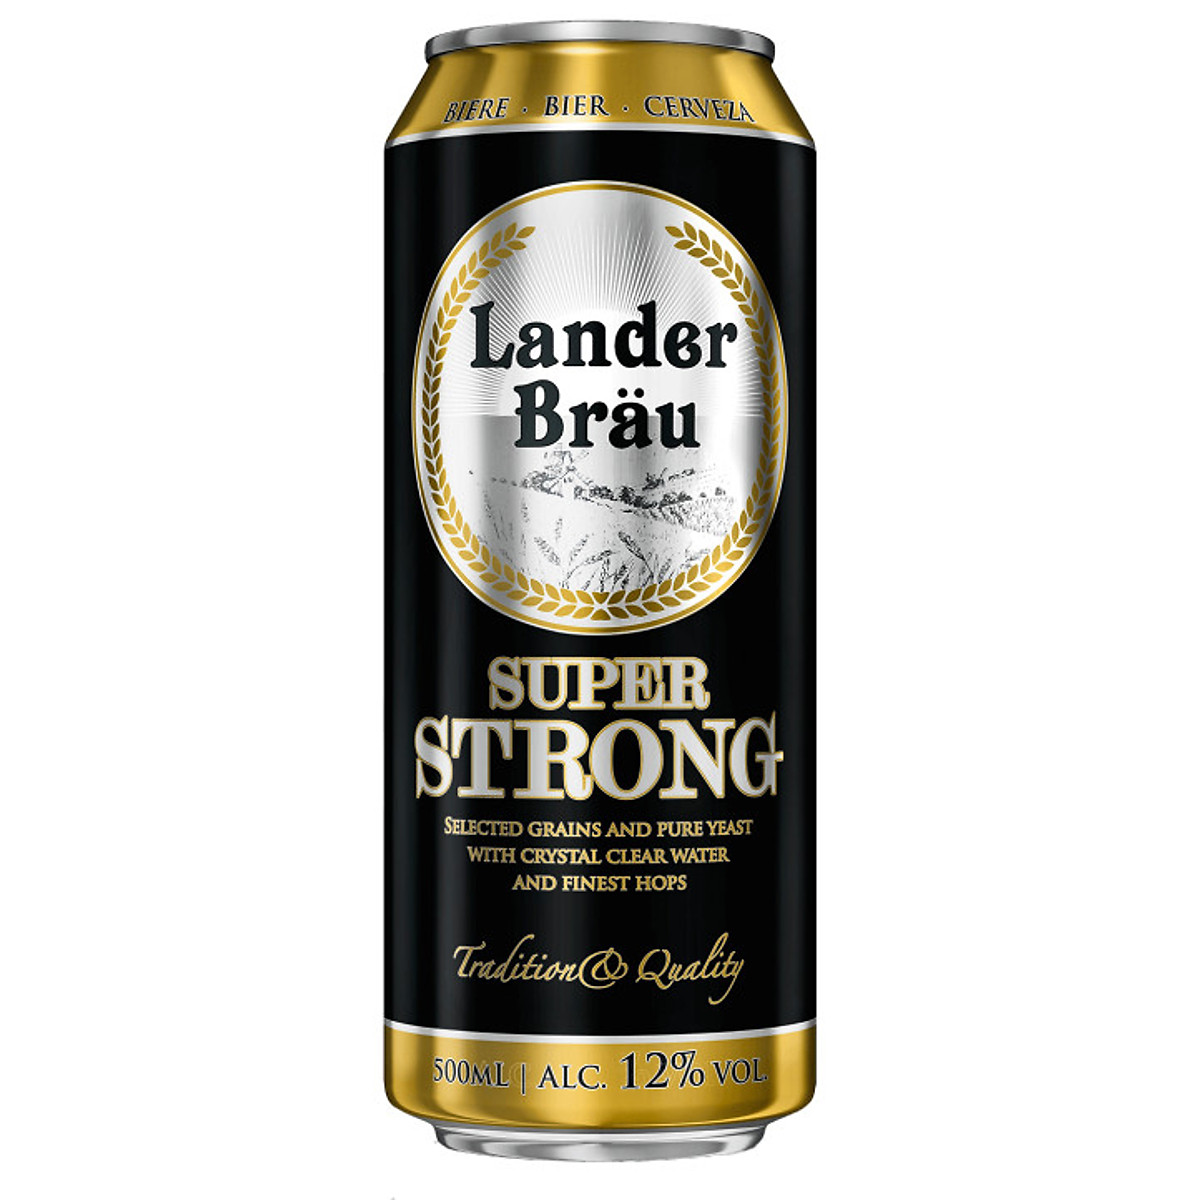 Bia Lander Brau Super Strong 12% Hà Lan - 12 Lon 500Ml - Đồ Uống Nhập Khẩu